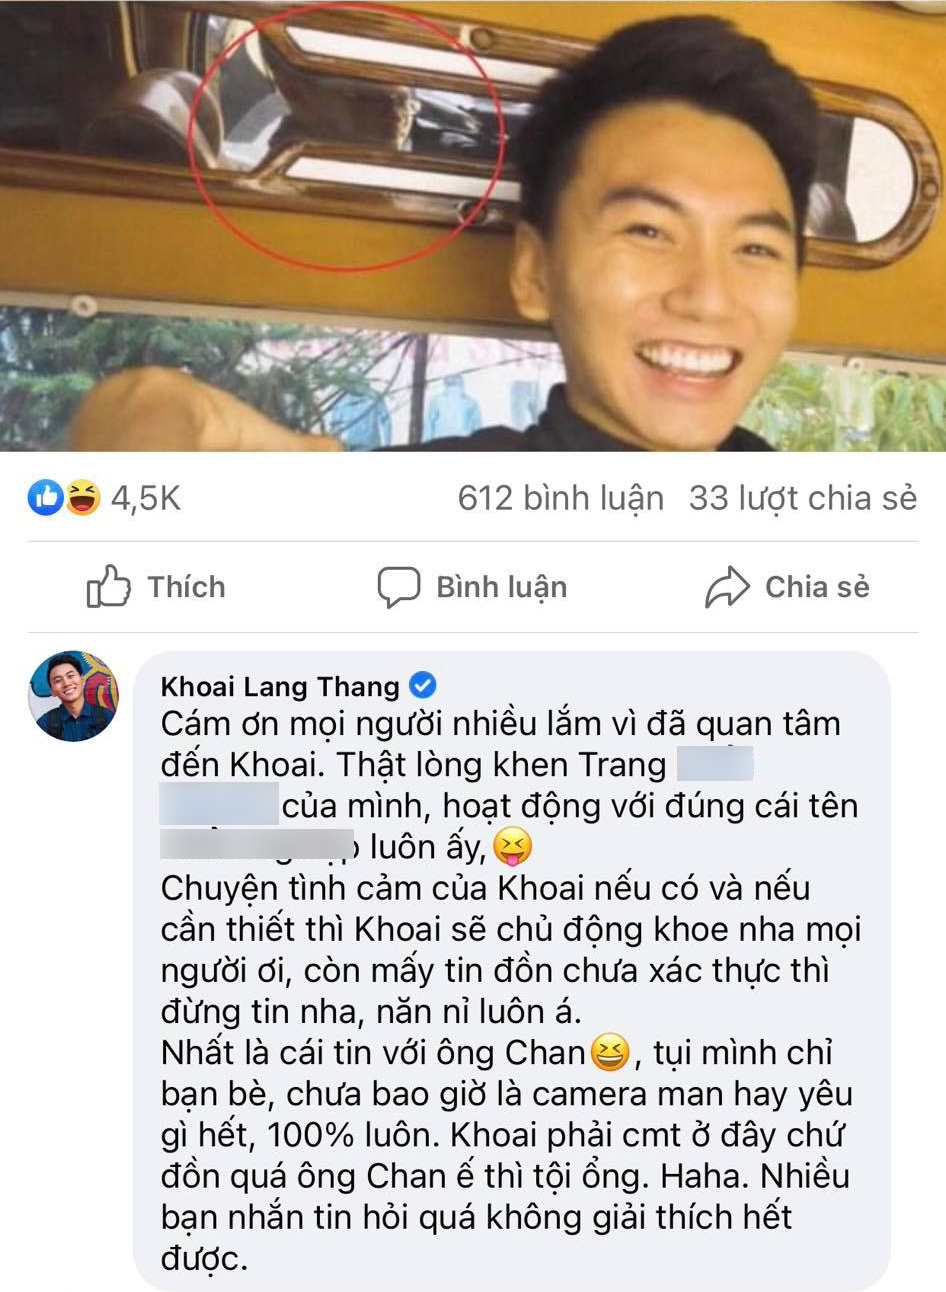 Khoai Lang Thang lên tiếng về tin đồn yêu đồng giới, làm rõ mối quan hệ với Chan La Cà - ảnh 3